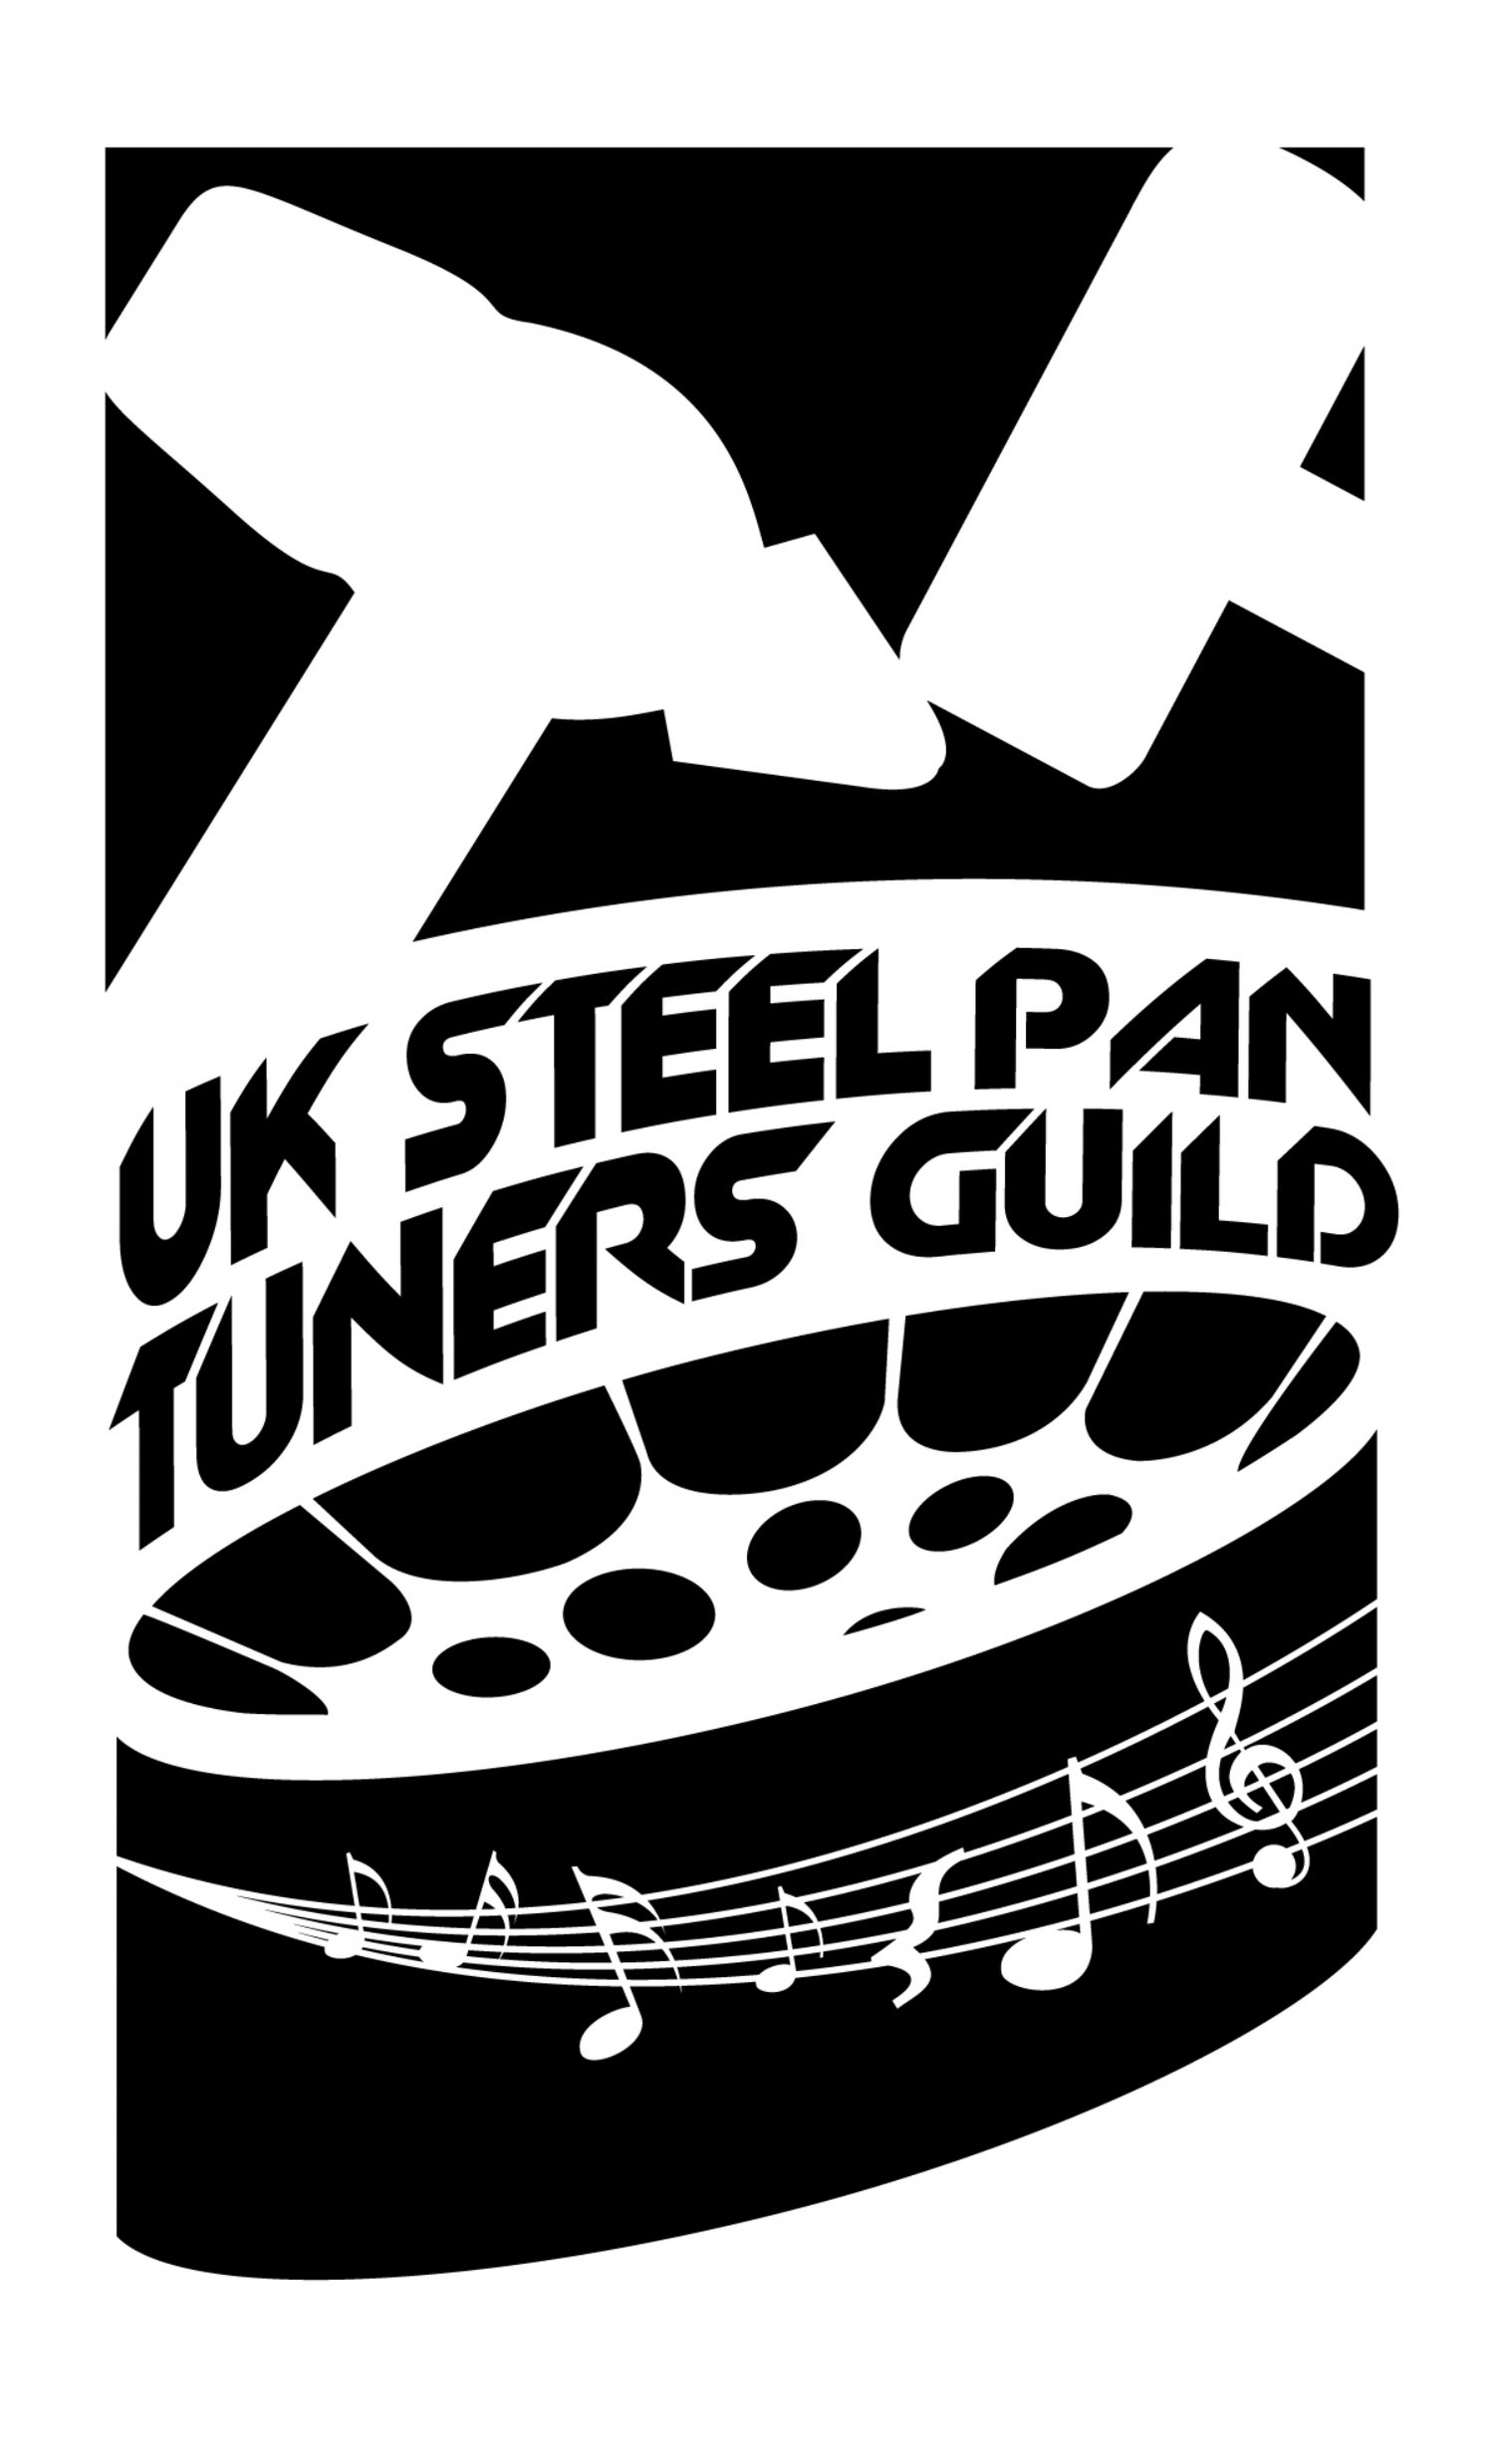 UK Steel Pan Tuners Guild